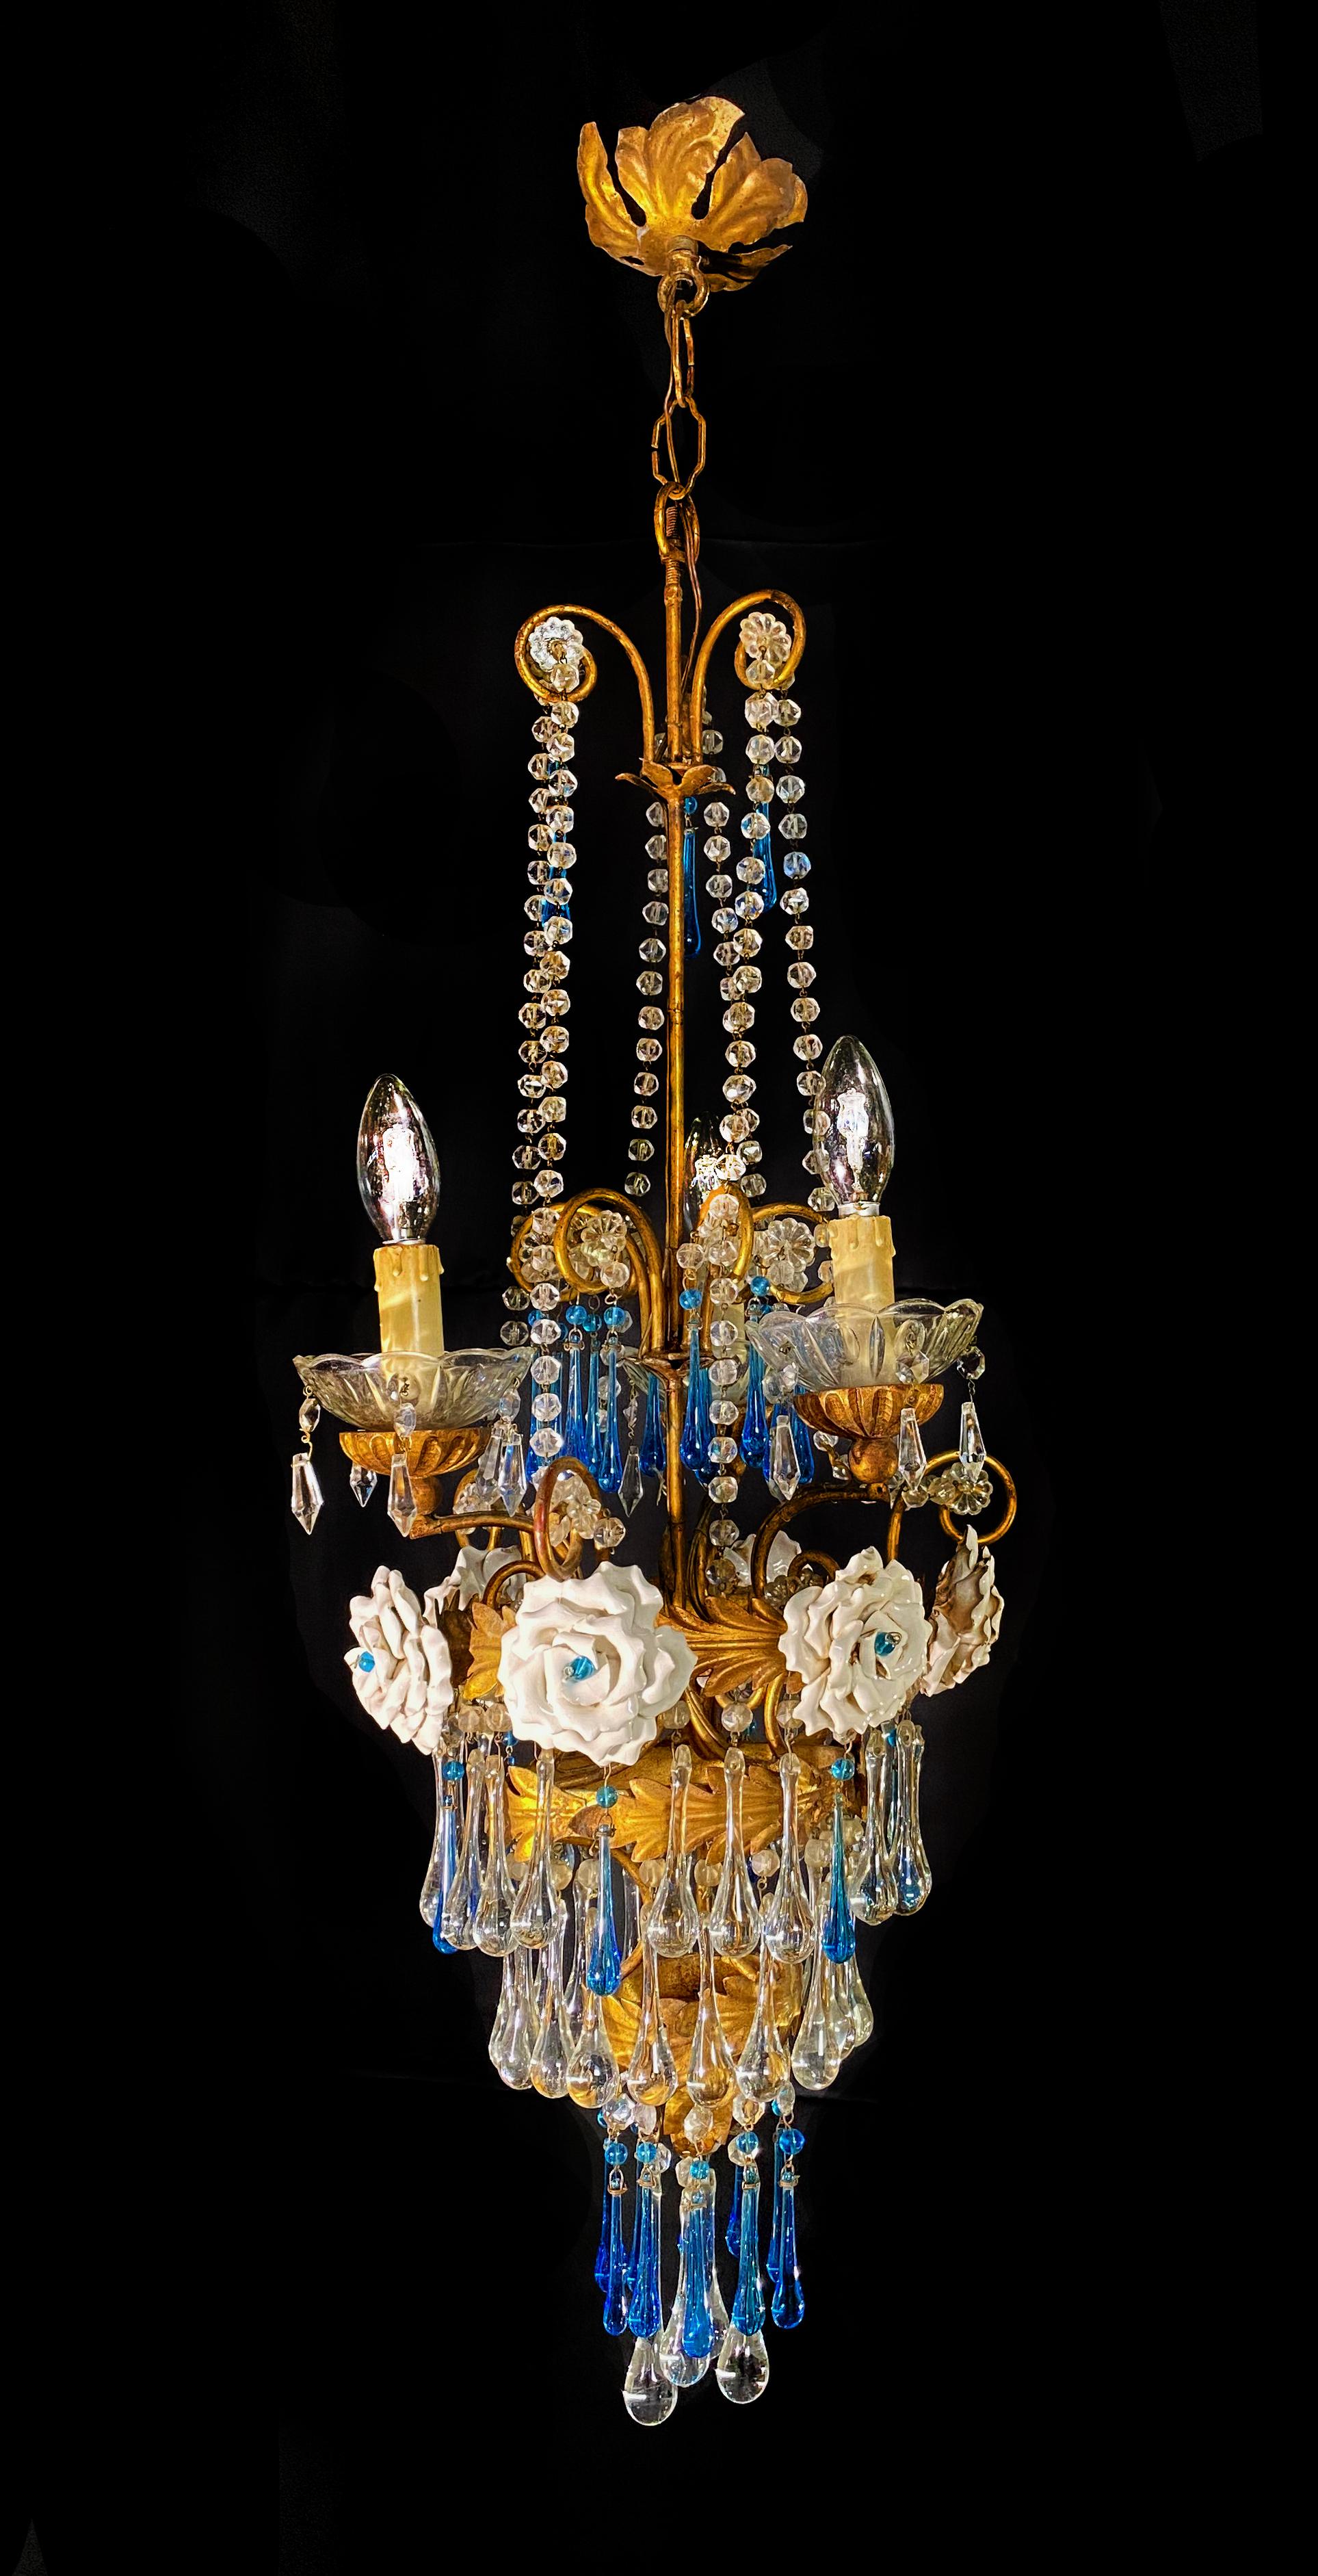 Eleganter venezianischer Kronleuchter. Blaue Tropfen und 6 Rosen hängen von dem goldenen Baldachin. 3 kleine Lichter.
.  